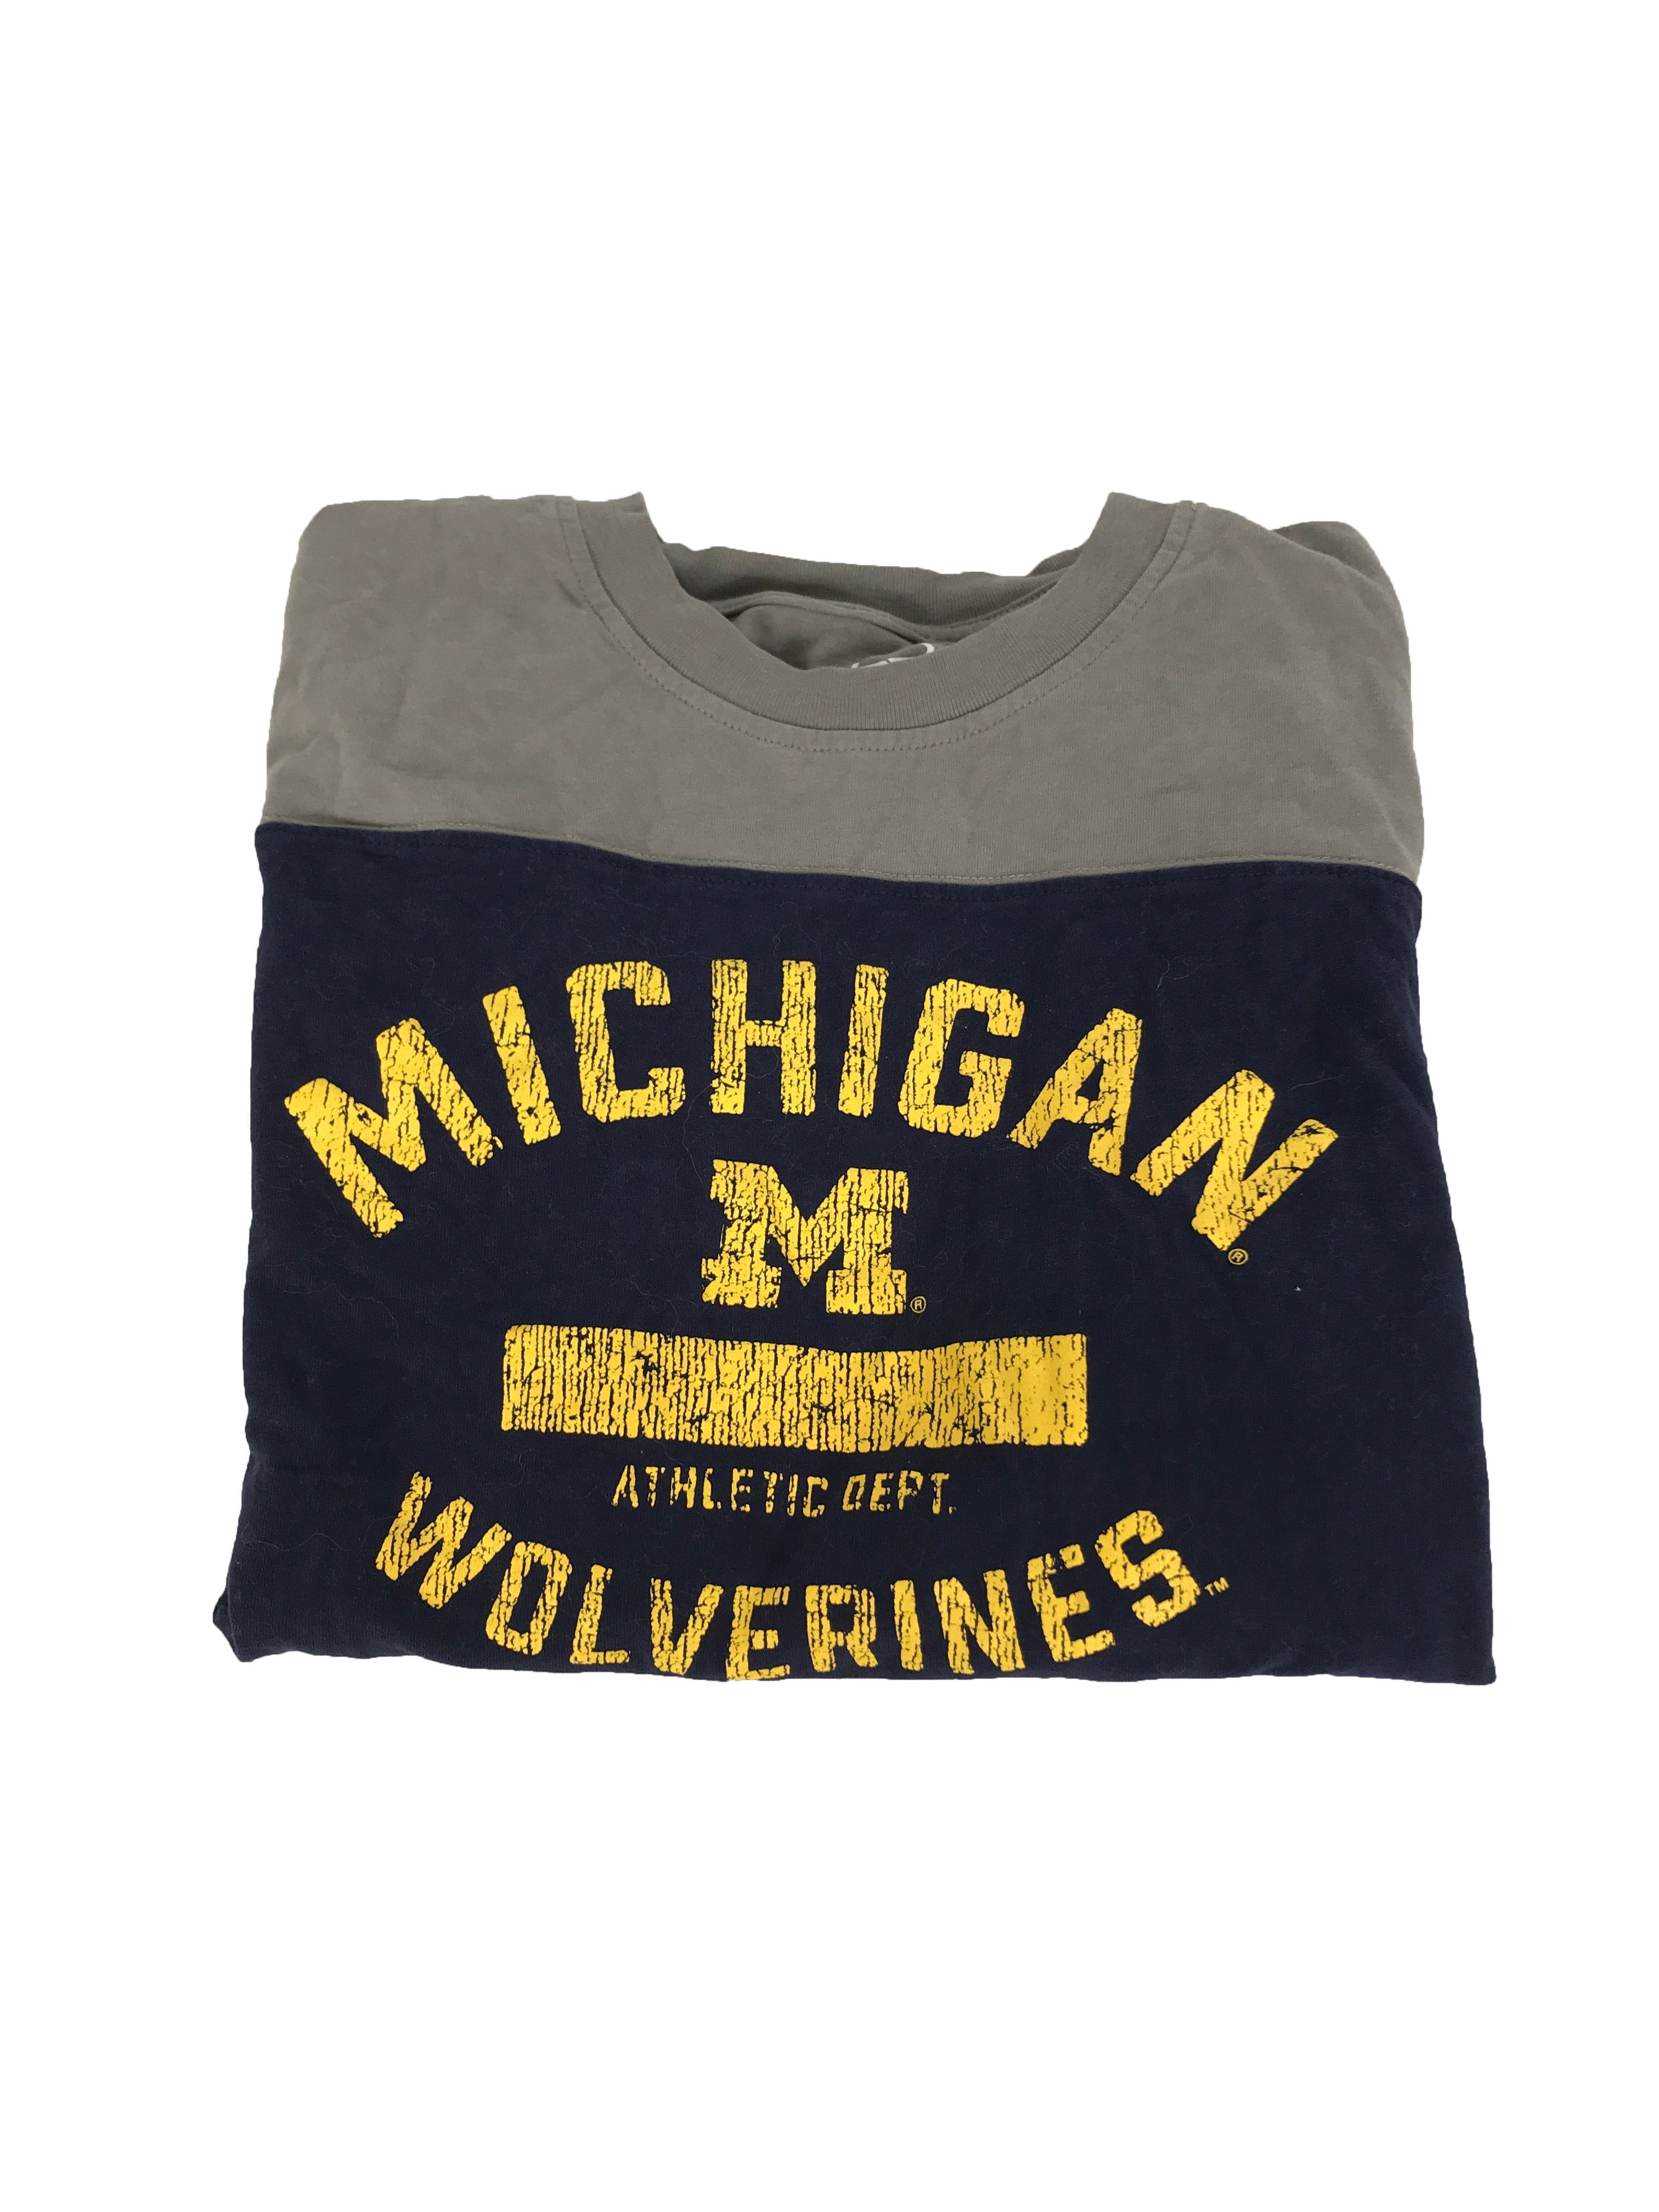 Michigan Long Sleeve Shirt Women's Size Large